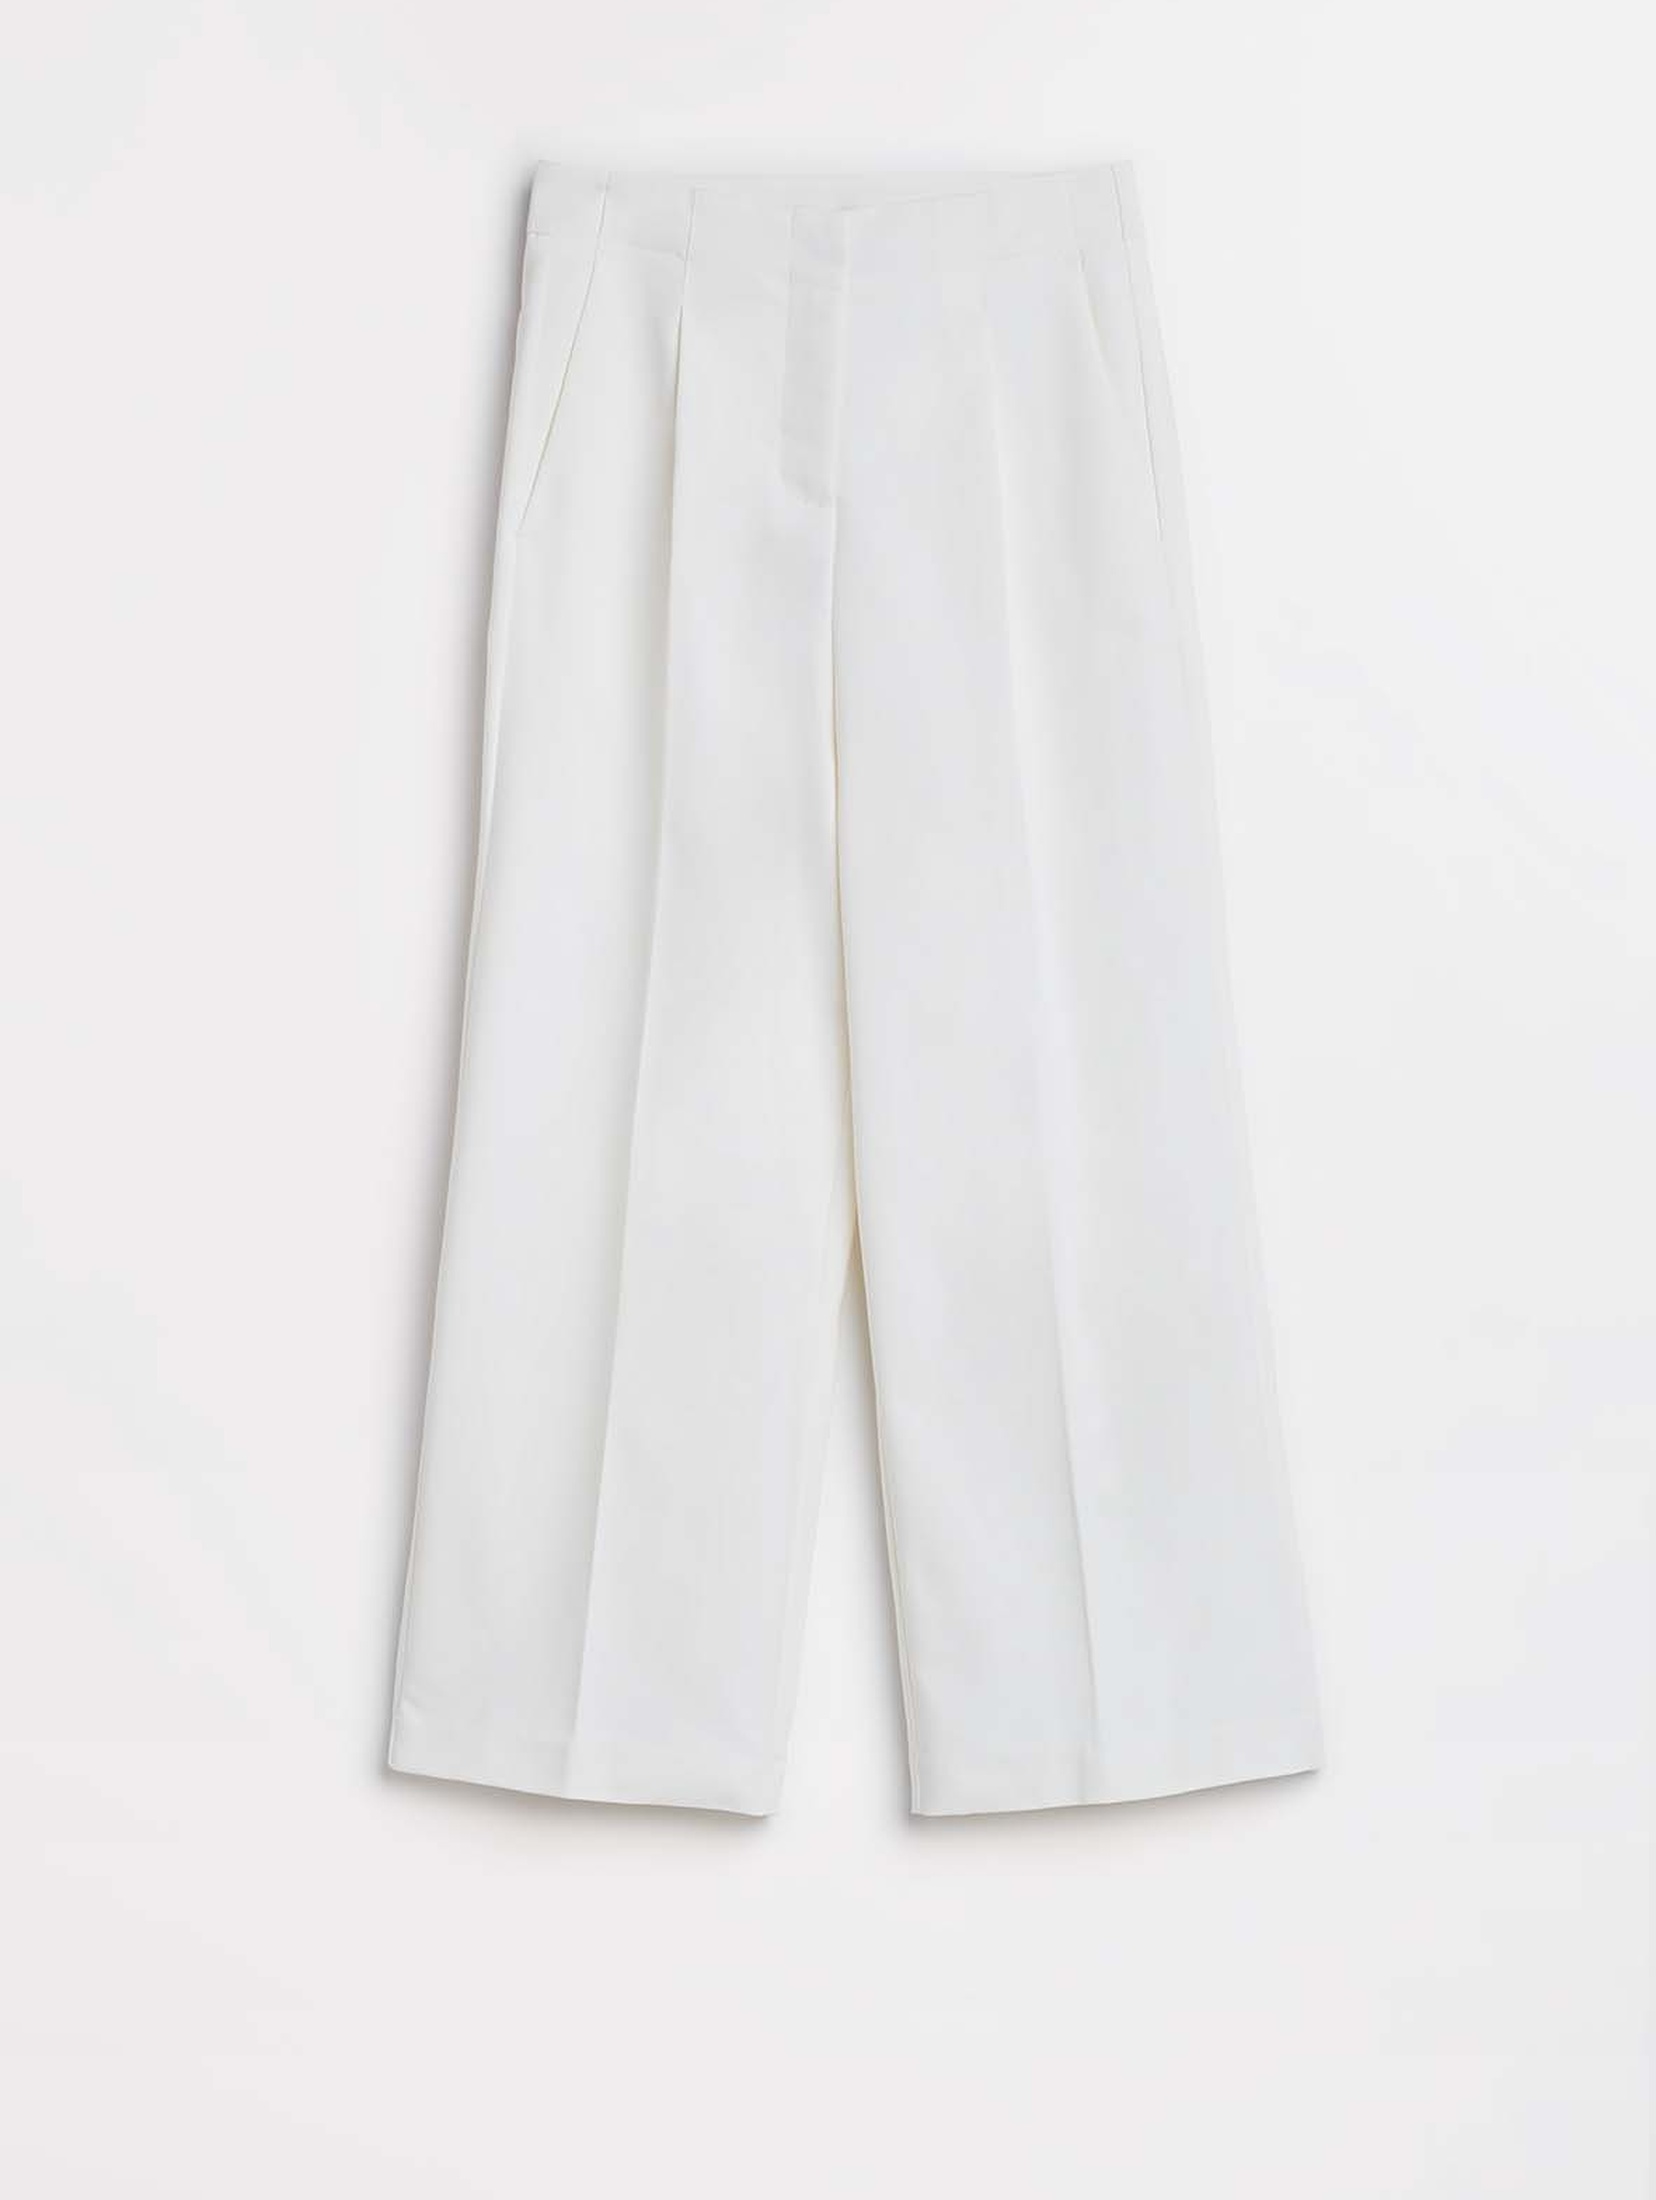 Spodnie damskie typu kuloty - białe